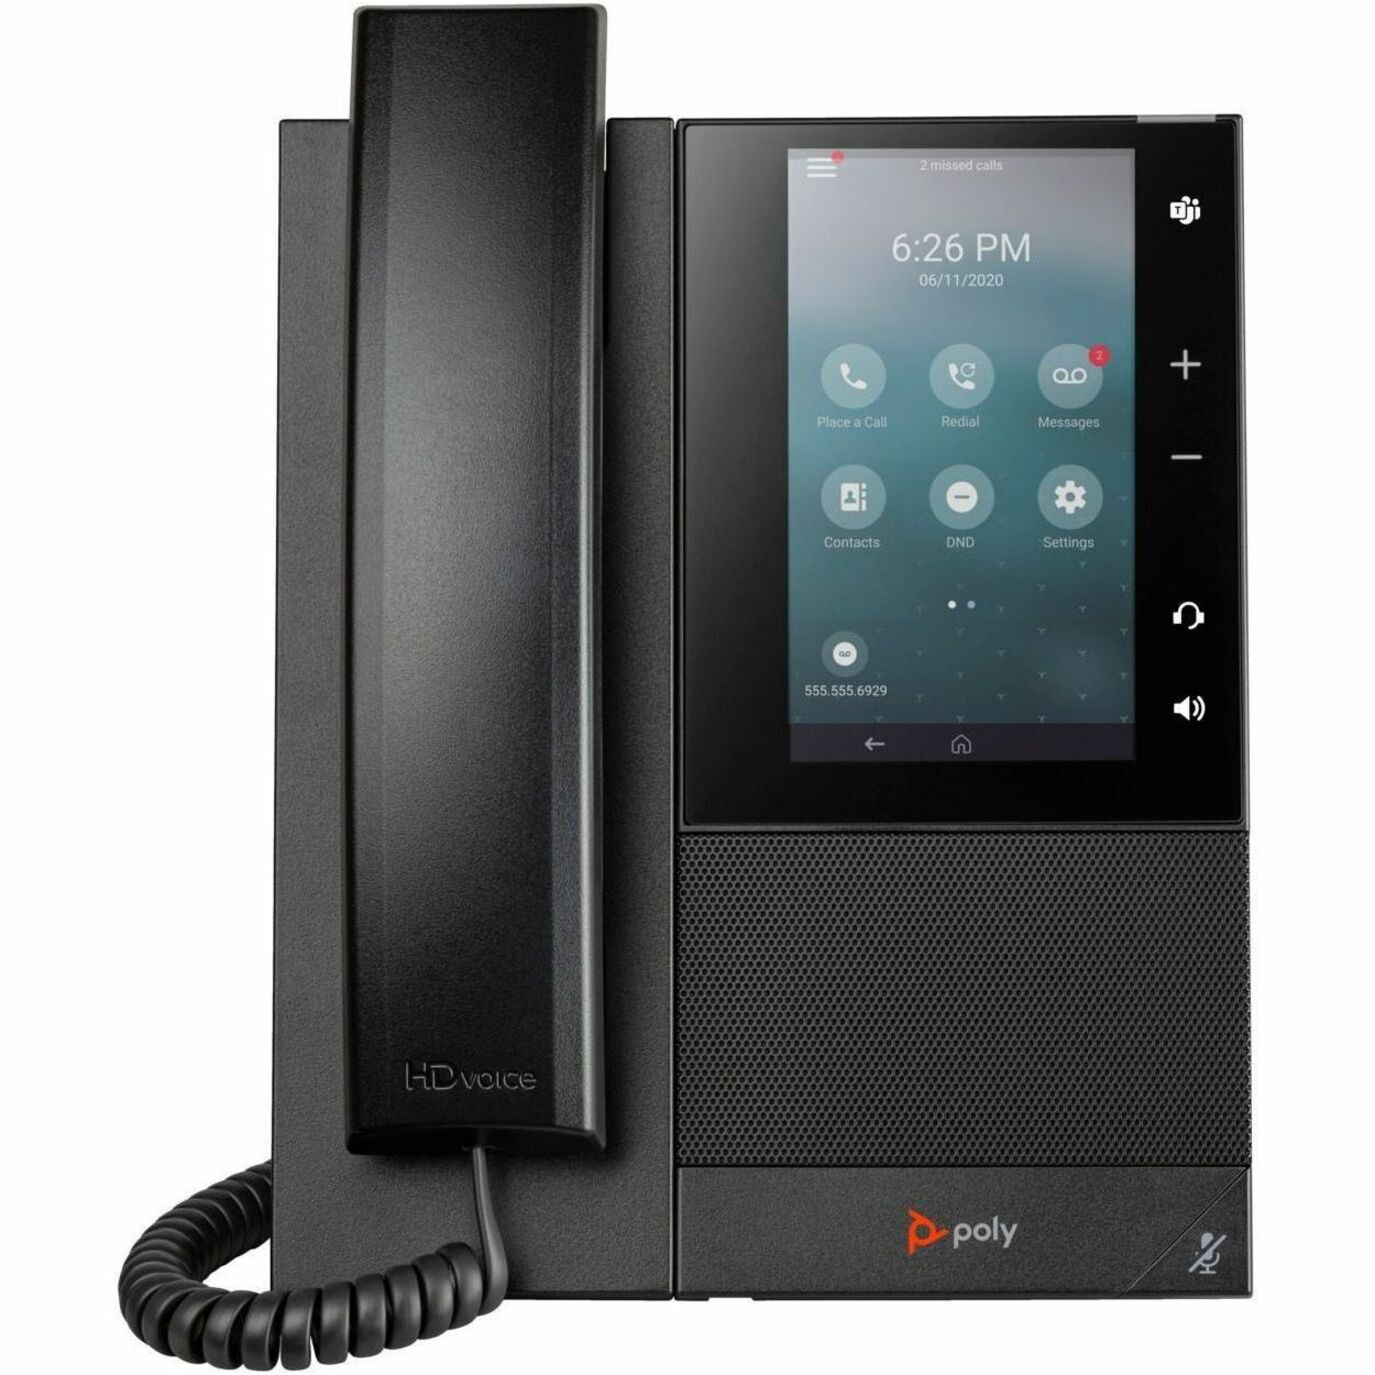 Poly 82Z78AA CCX 500 Business Media Telefon mit Open SIP und PoE-fähig Anruferkennung Freisprecheinrichtung VoIP